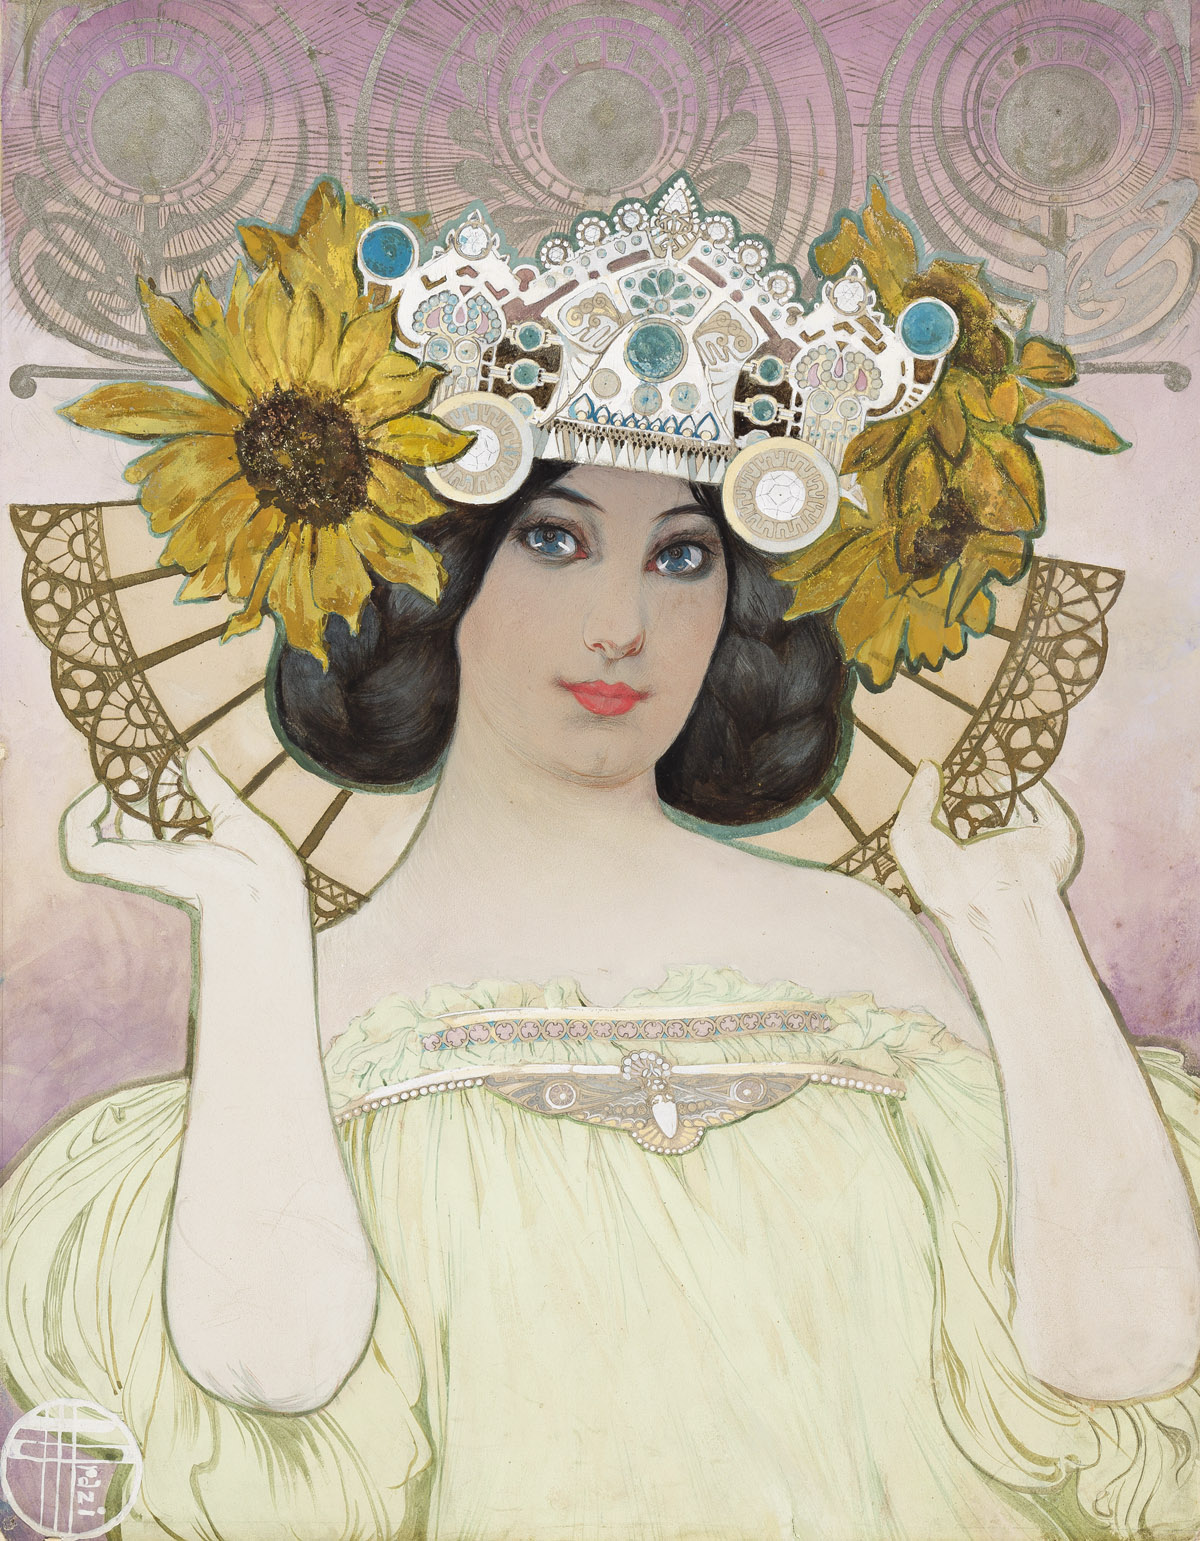 MANUEL ORAZI (1860-1934) Art Nouveau Woman with Sunflower Headdress. * Art Nouveau Woman Holding Kettle. [POSTERS]